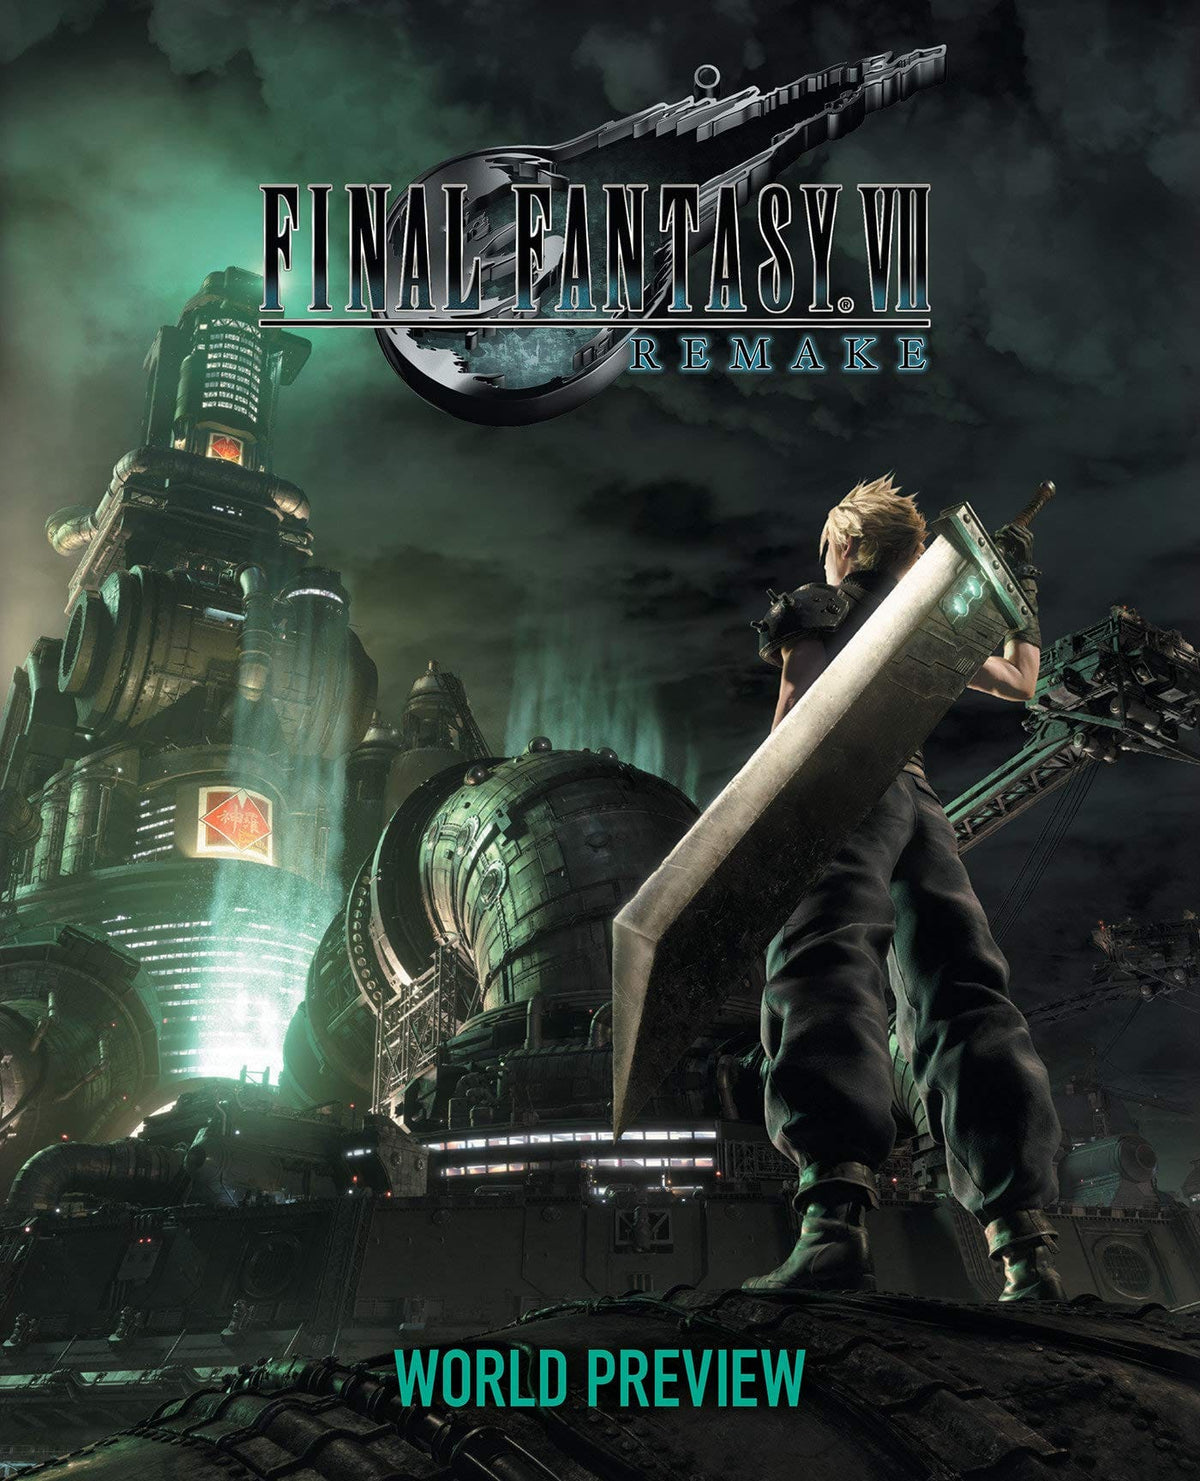 Final Fantasy VII Remake: World Preview HC - Third Eye